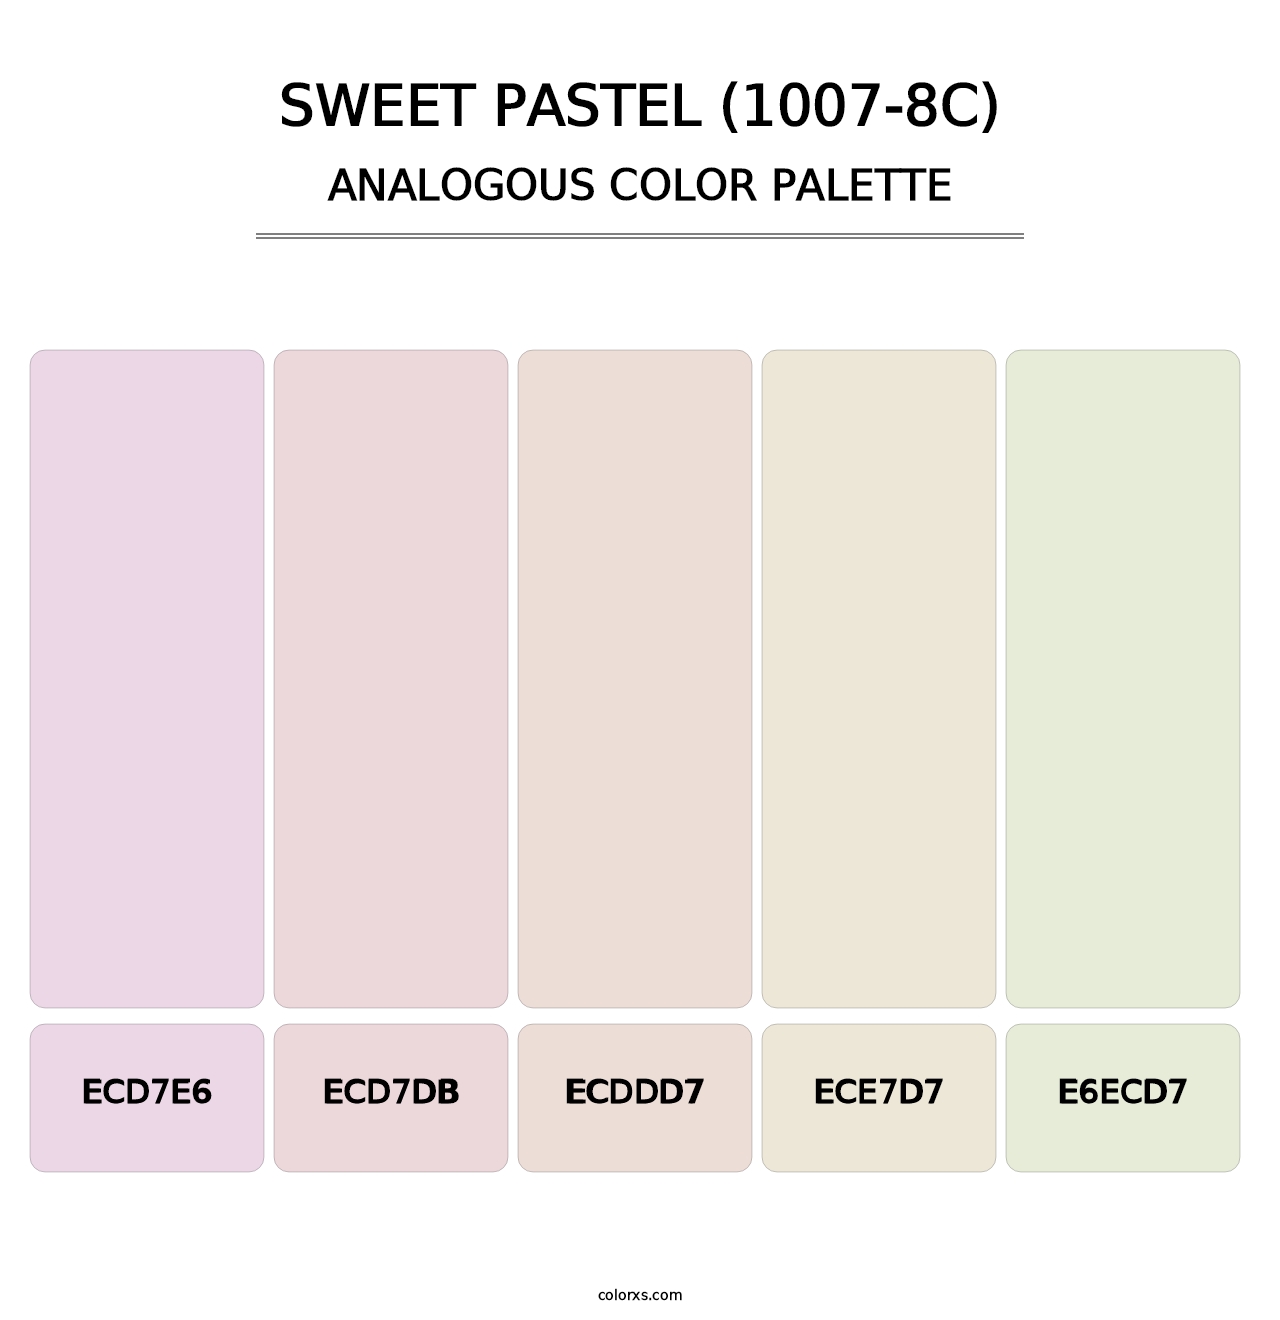 Sweet Pastel (1007-8C) - Analogous Color Palette